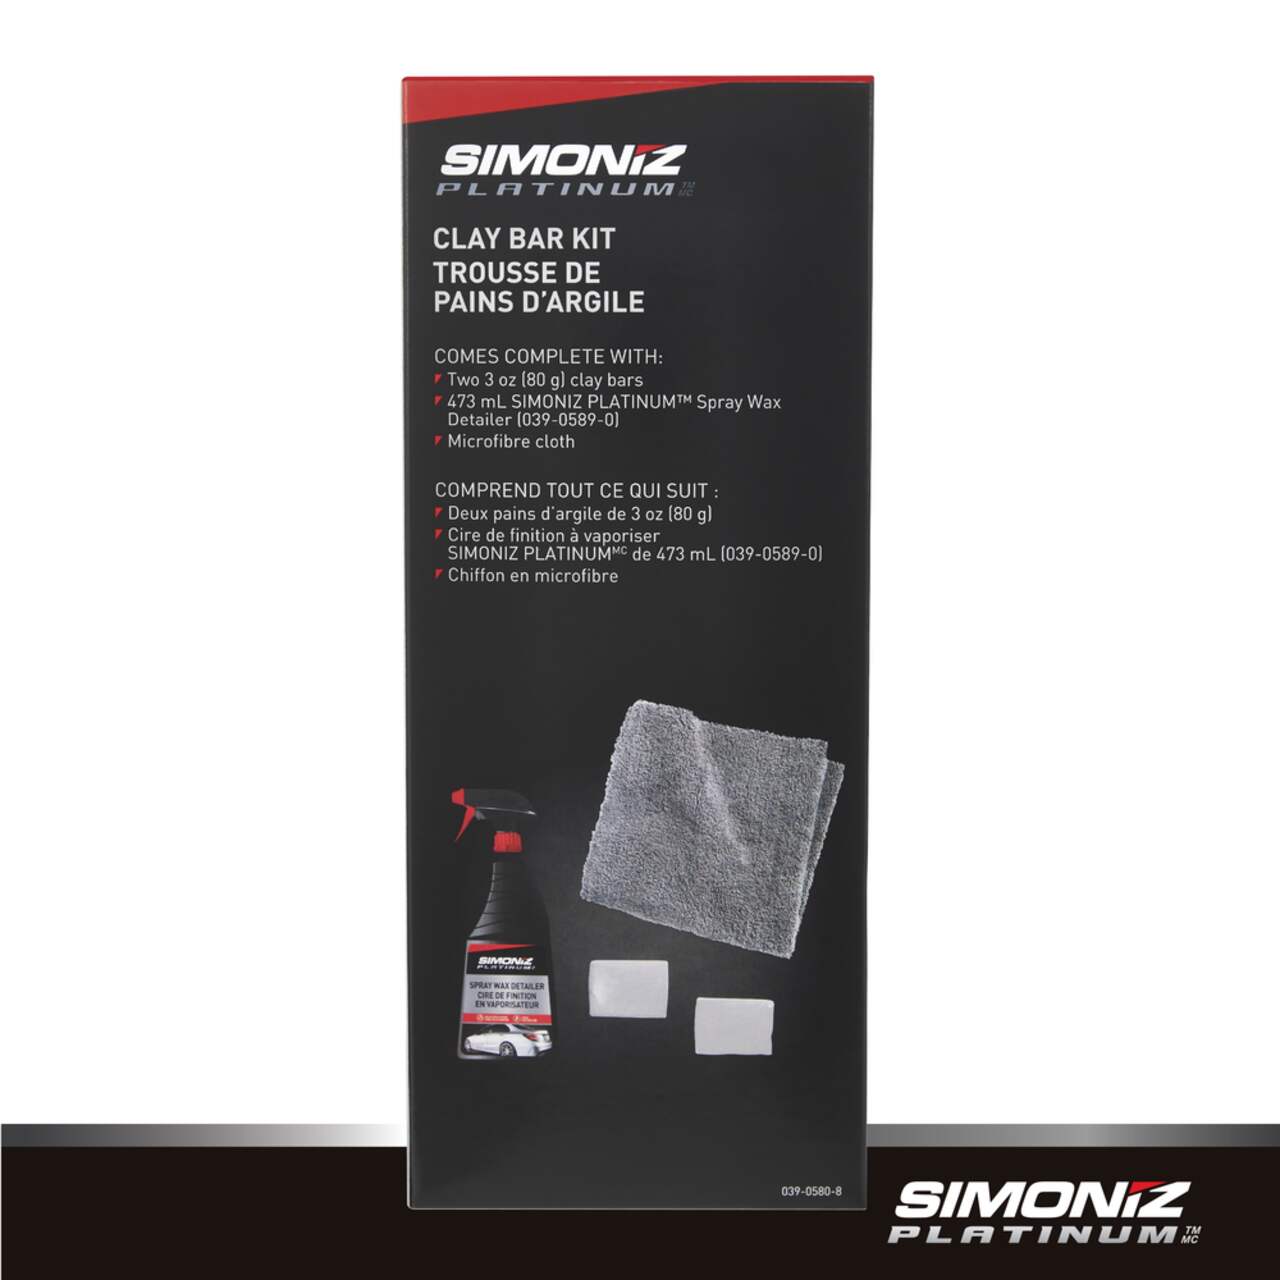 SIMONIZ Platinum Car Clay Bar kit, 4-pc